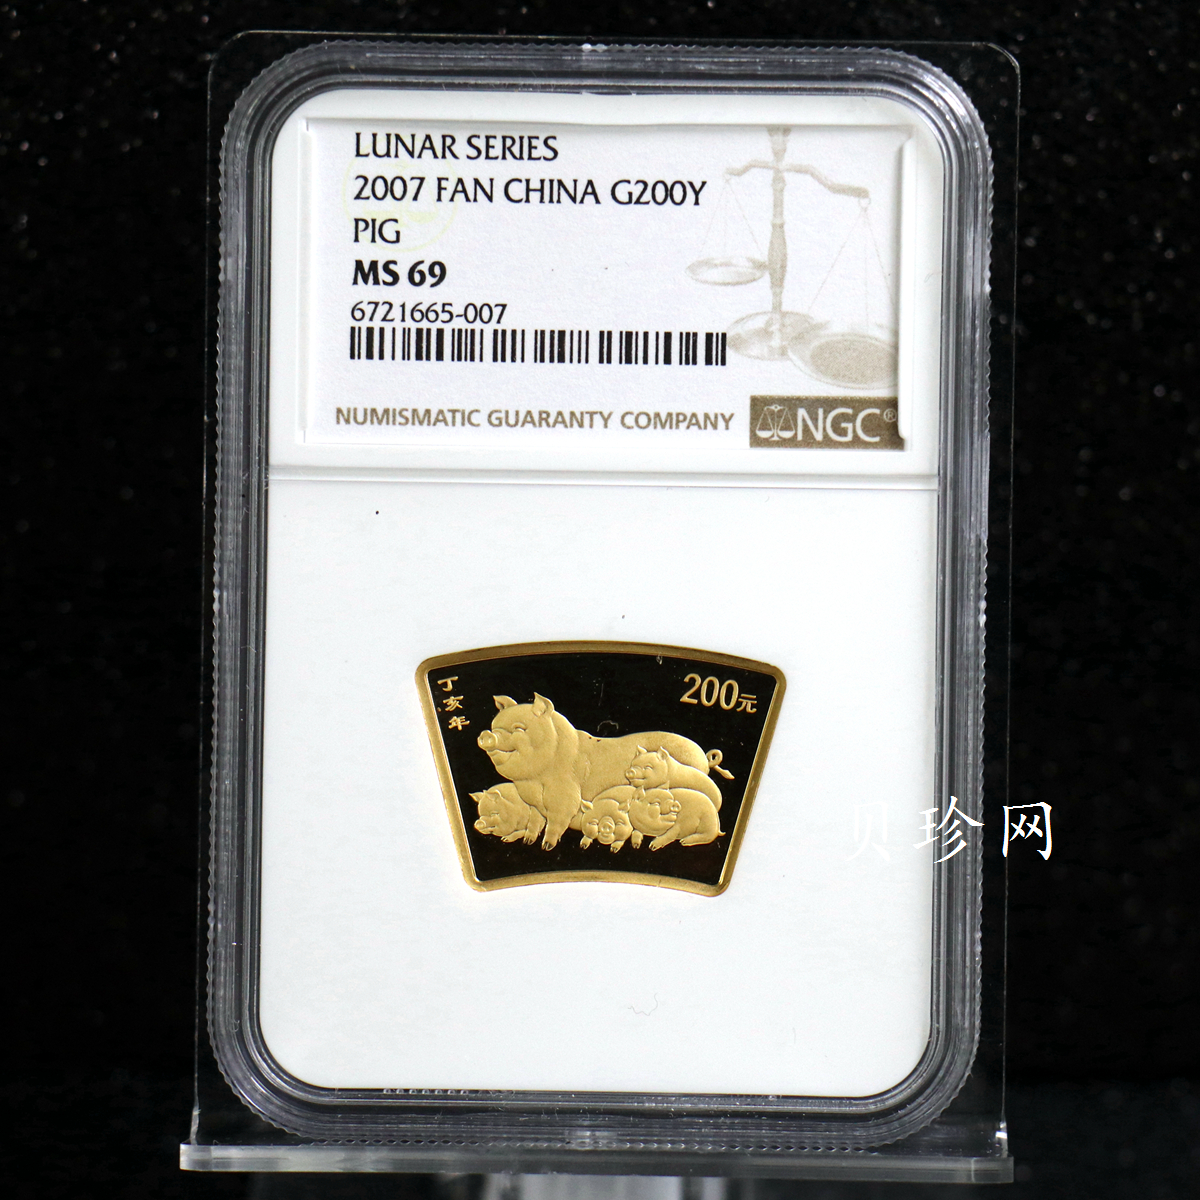 【061205】2007年丁亥猪年生肖1/2盎司扇形普制金币